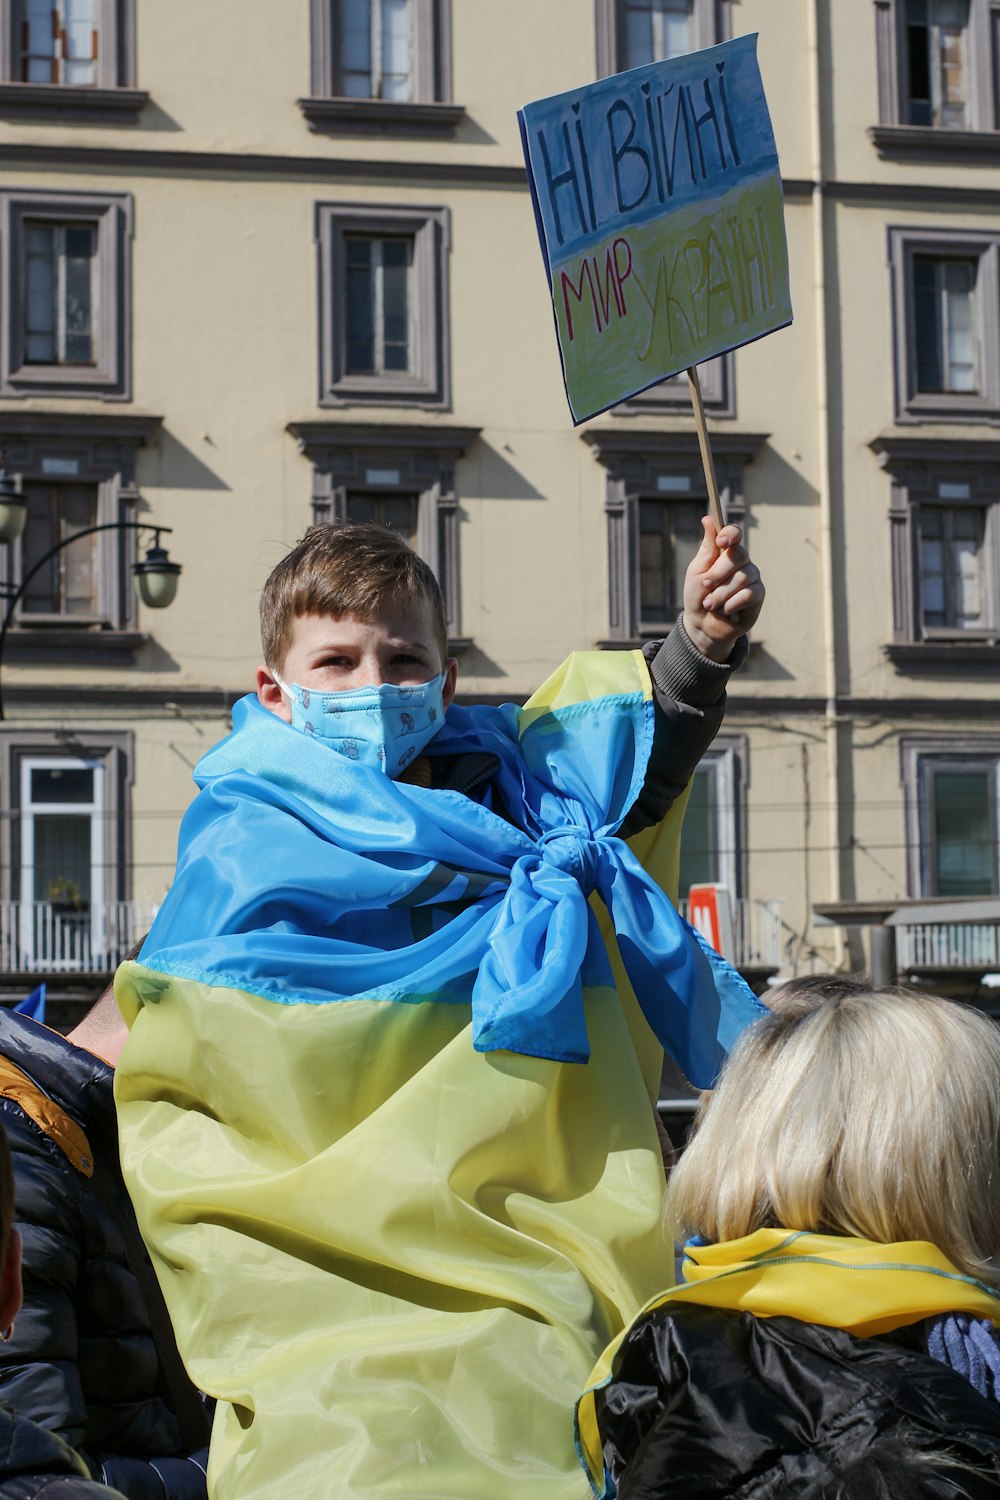 Un uomo in una coperta blu e gialla che regge un cartello